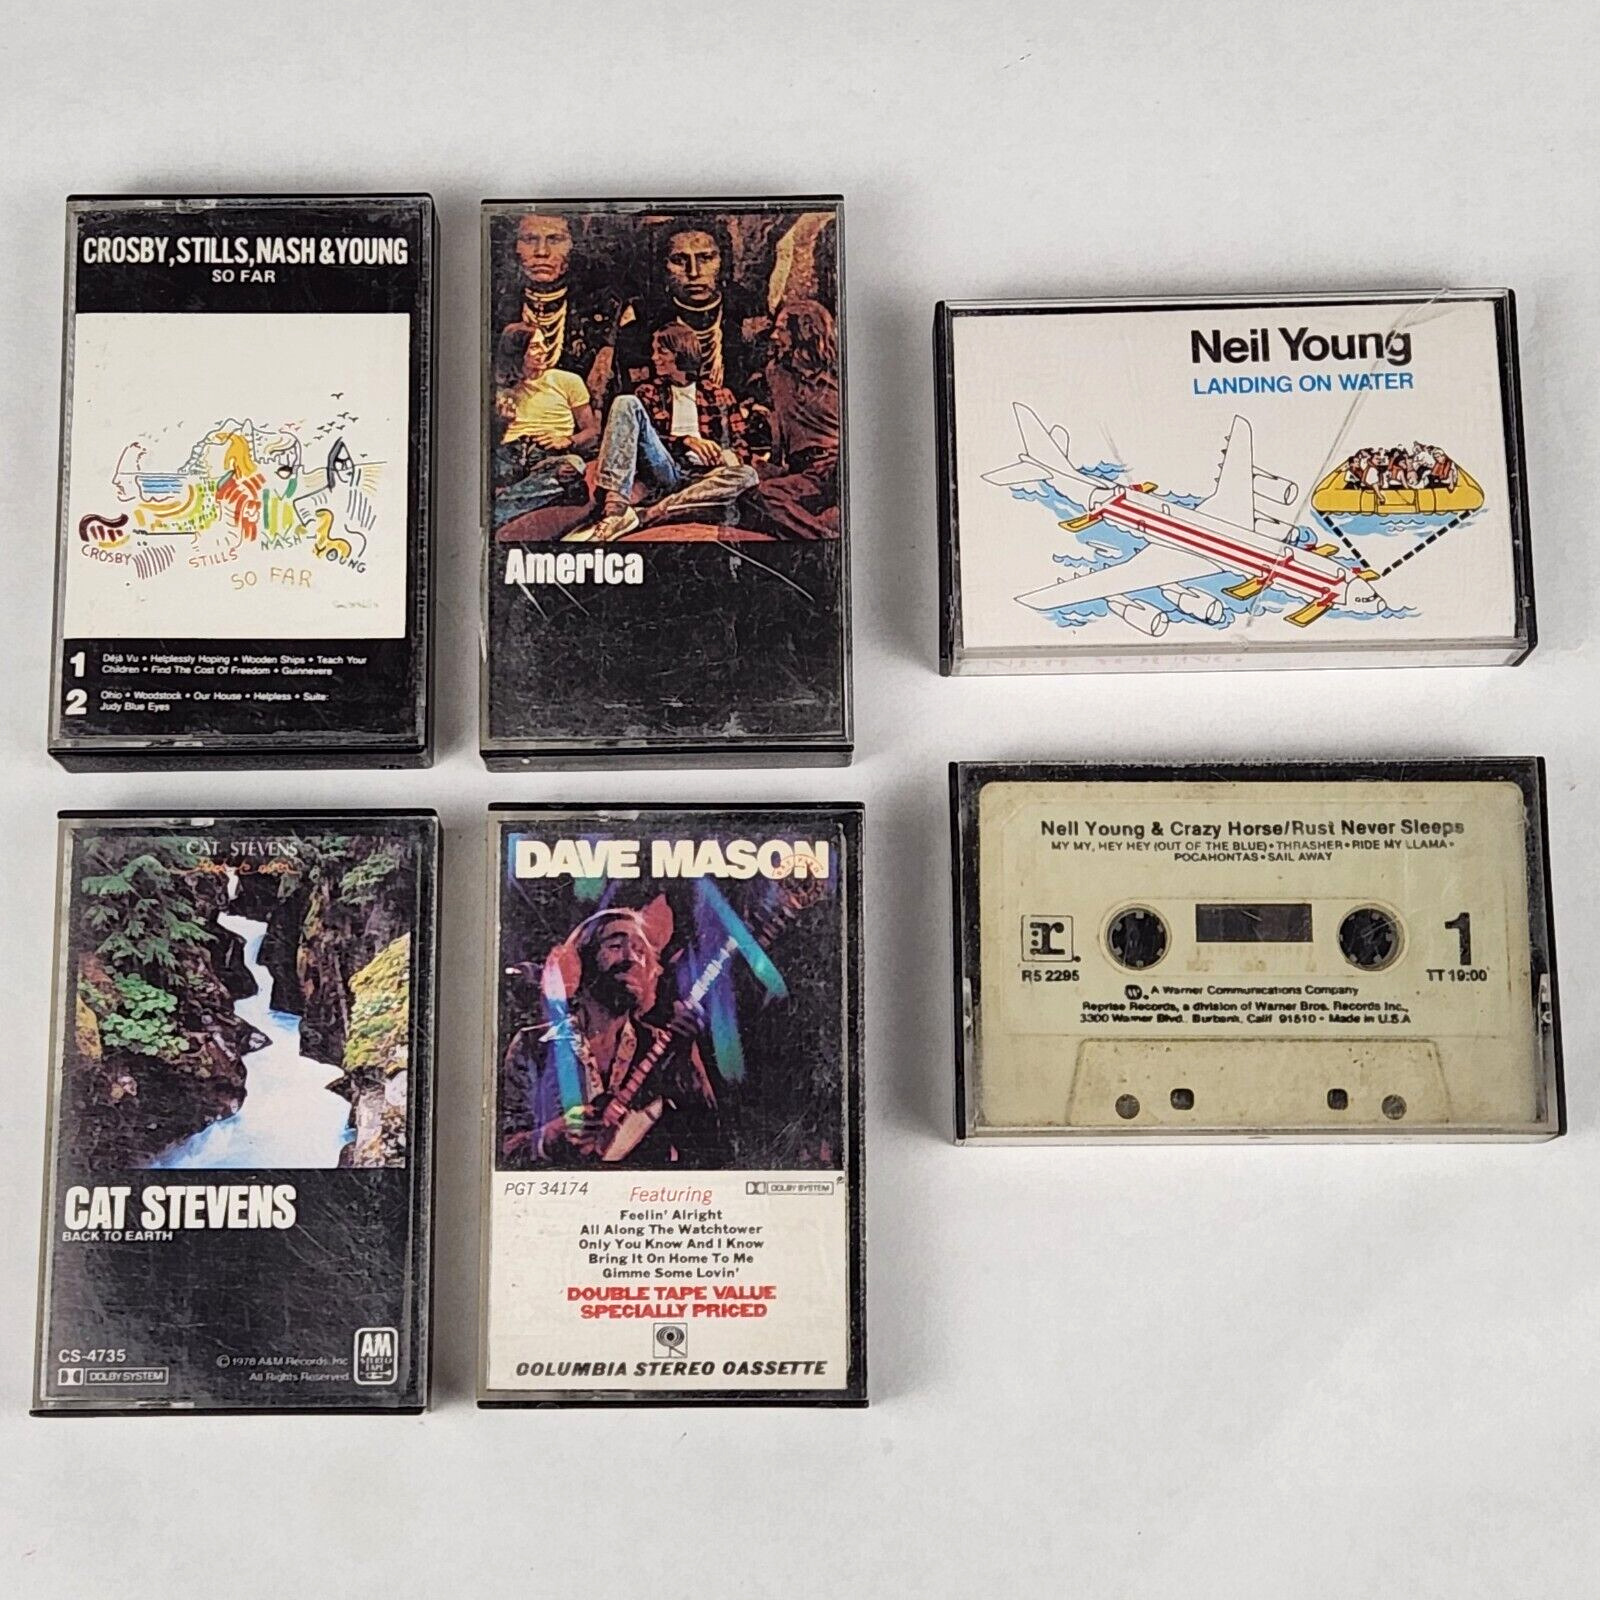 Neil Young Dave Mason Cat Stevens America Cassette Tape Lot of 6 So Far